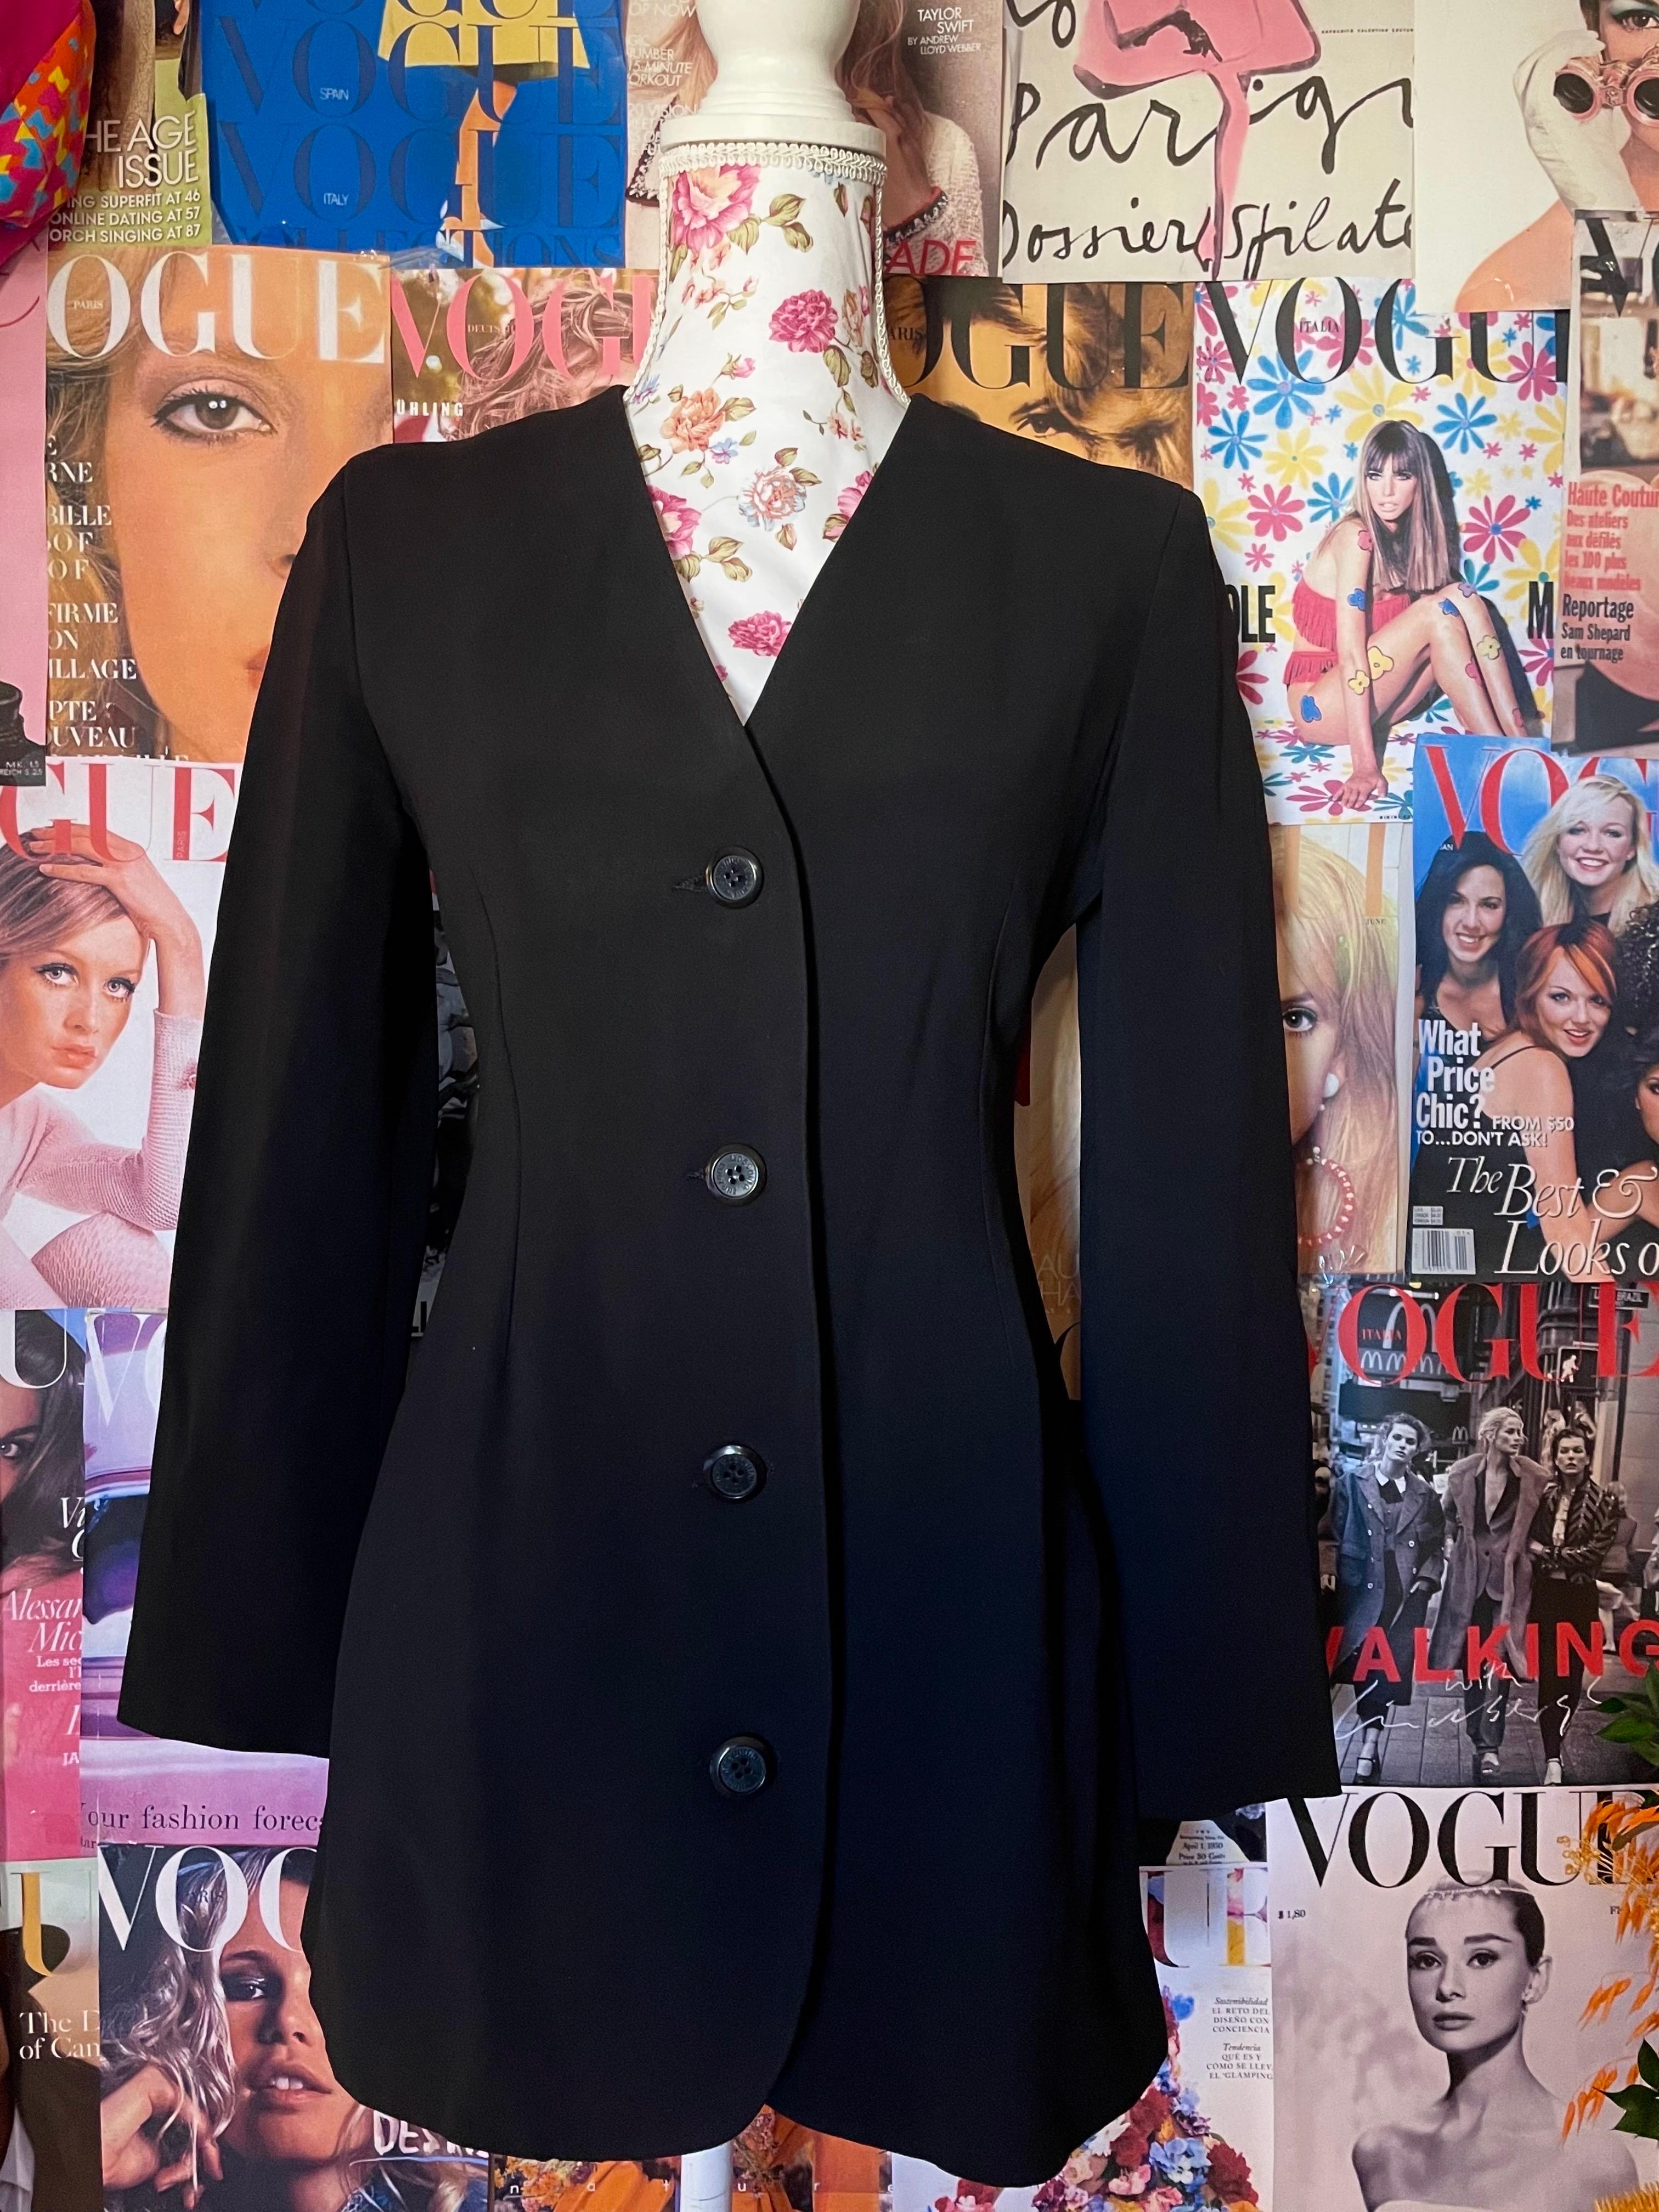 1990's Vintage Moschino Couture Schwarz Blazer Jacke. in perfektem Zustand.  


Größen
 I 42 
Fr 38
US 8
UK 10 

Abmessungen: 

JACKET :

Schultern  : 39 cm 
Taille : 35 cm 
Ärmel : 55 cm
Oberweite 42 cm
Länge 73 cm



Bitte vergewissern Sie sich,